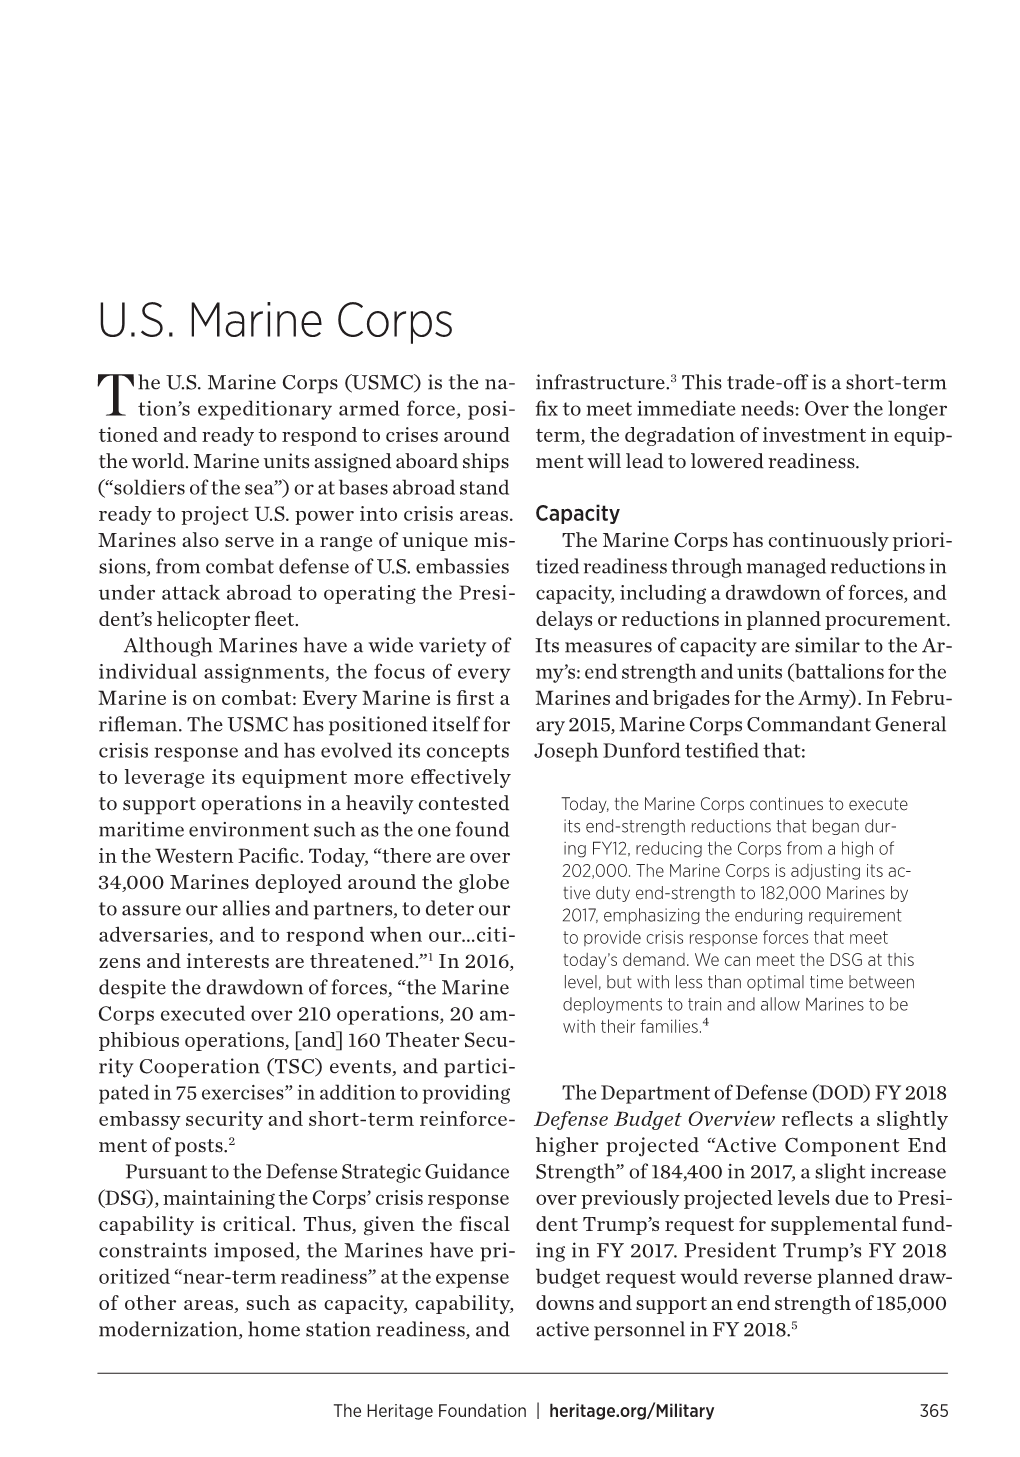 U.S. Marine Corps (USMC) Is the Na Marine Corps (USMC) He U.S